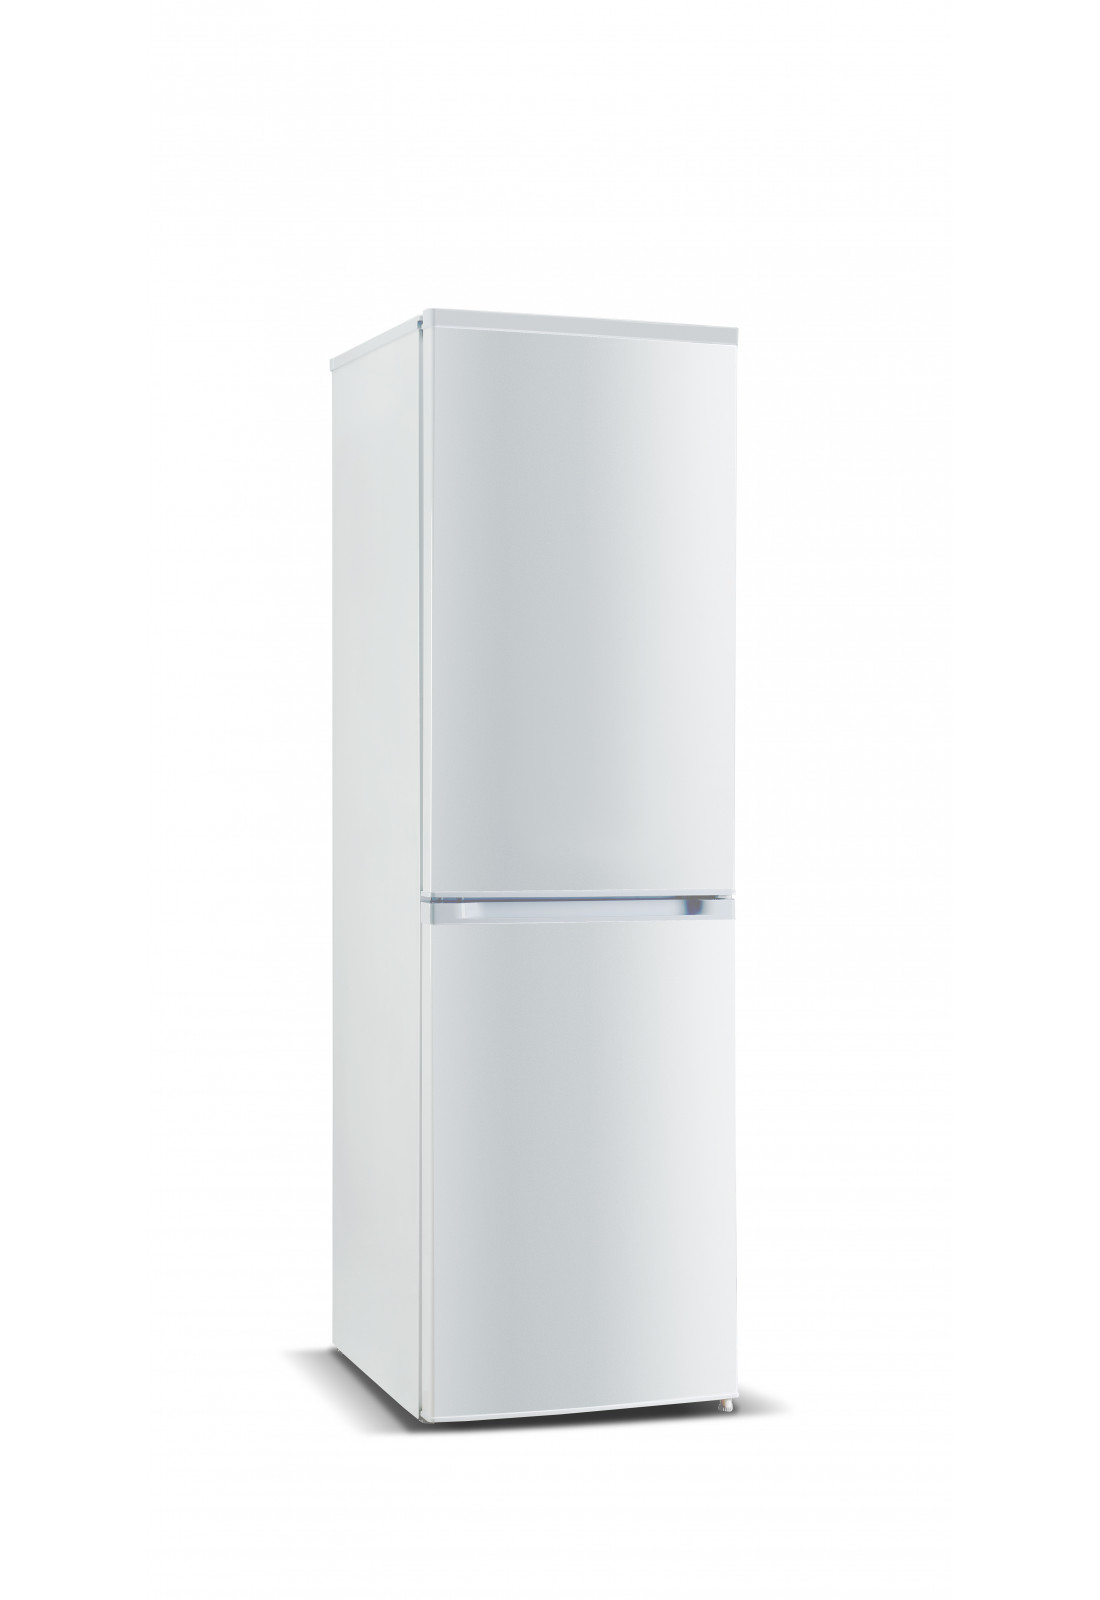 Дверця морозильної камери холодильника NORD B 185